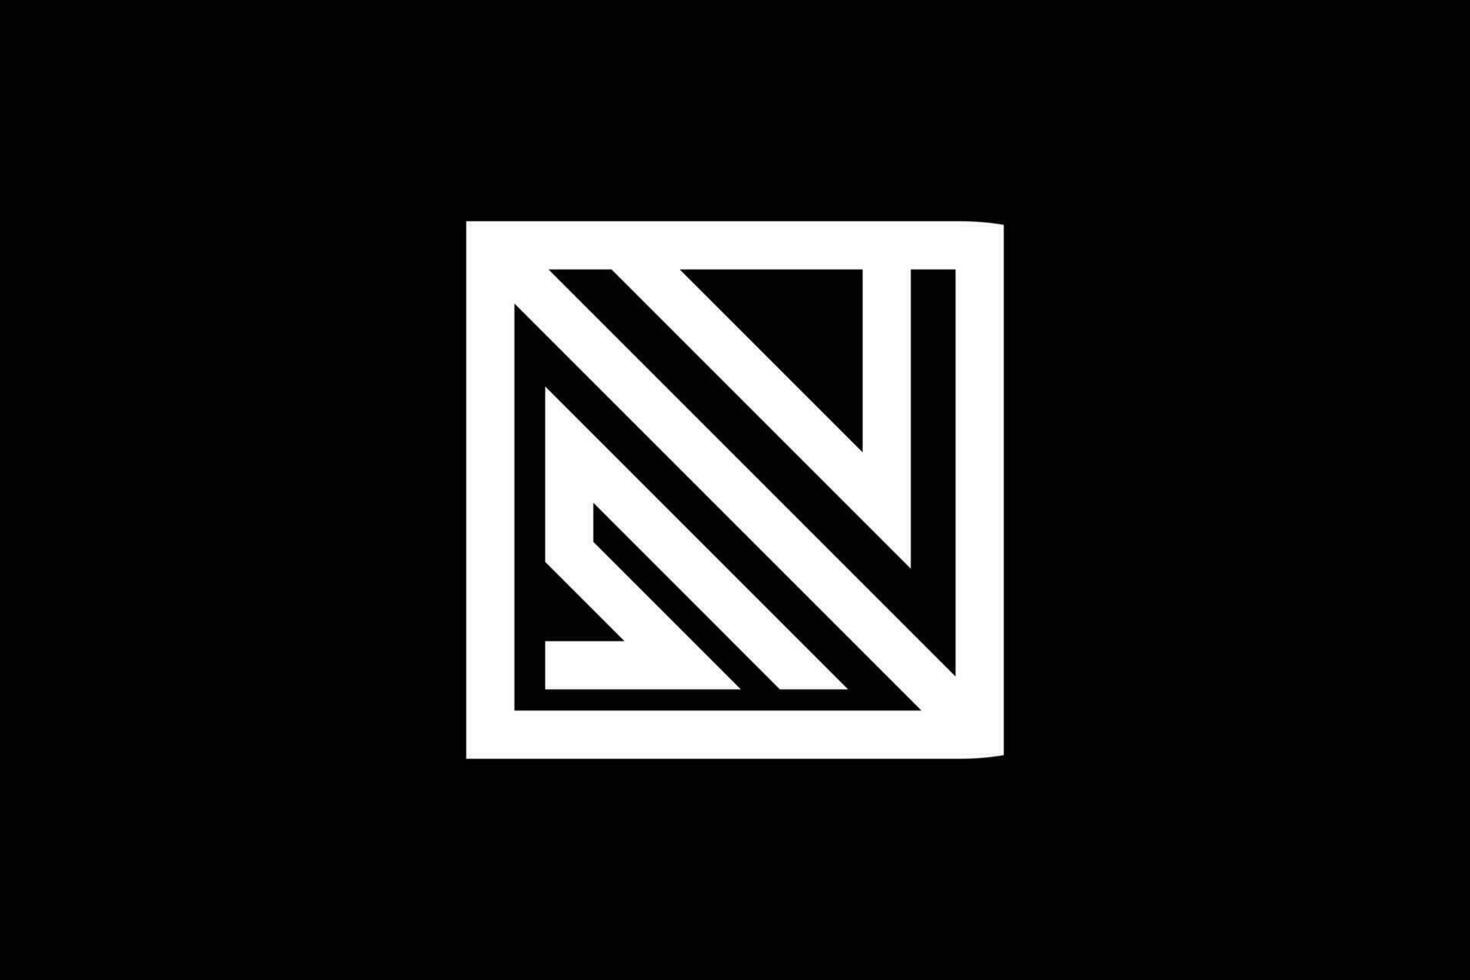 Letter N S trendy vector logo design